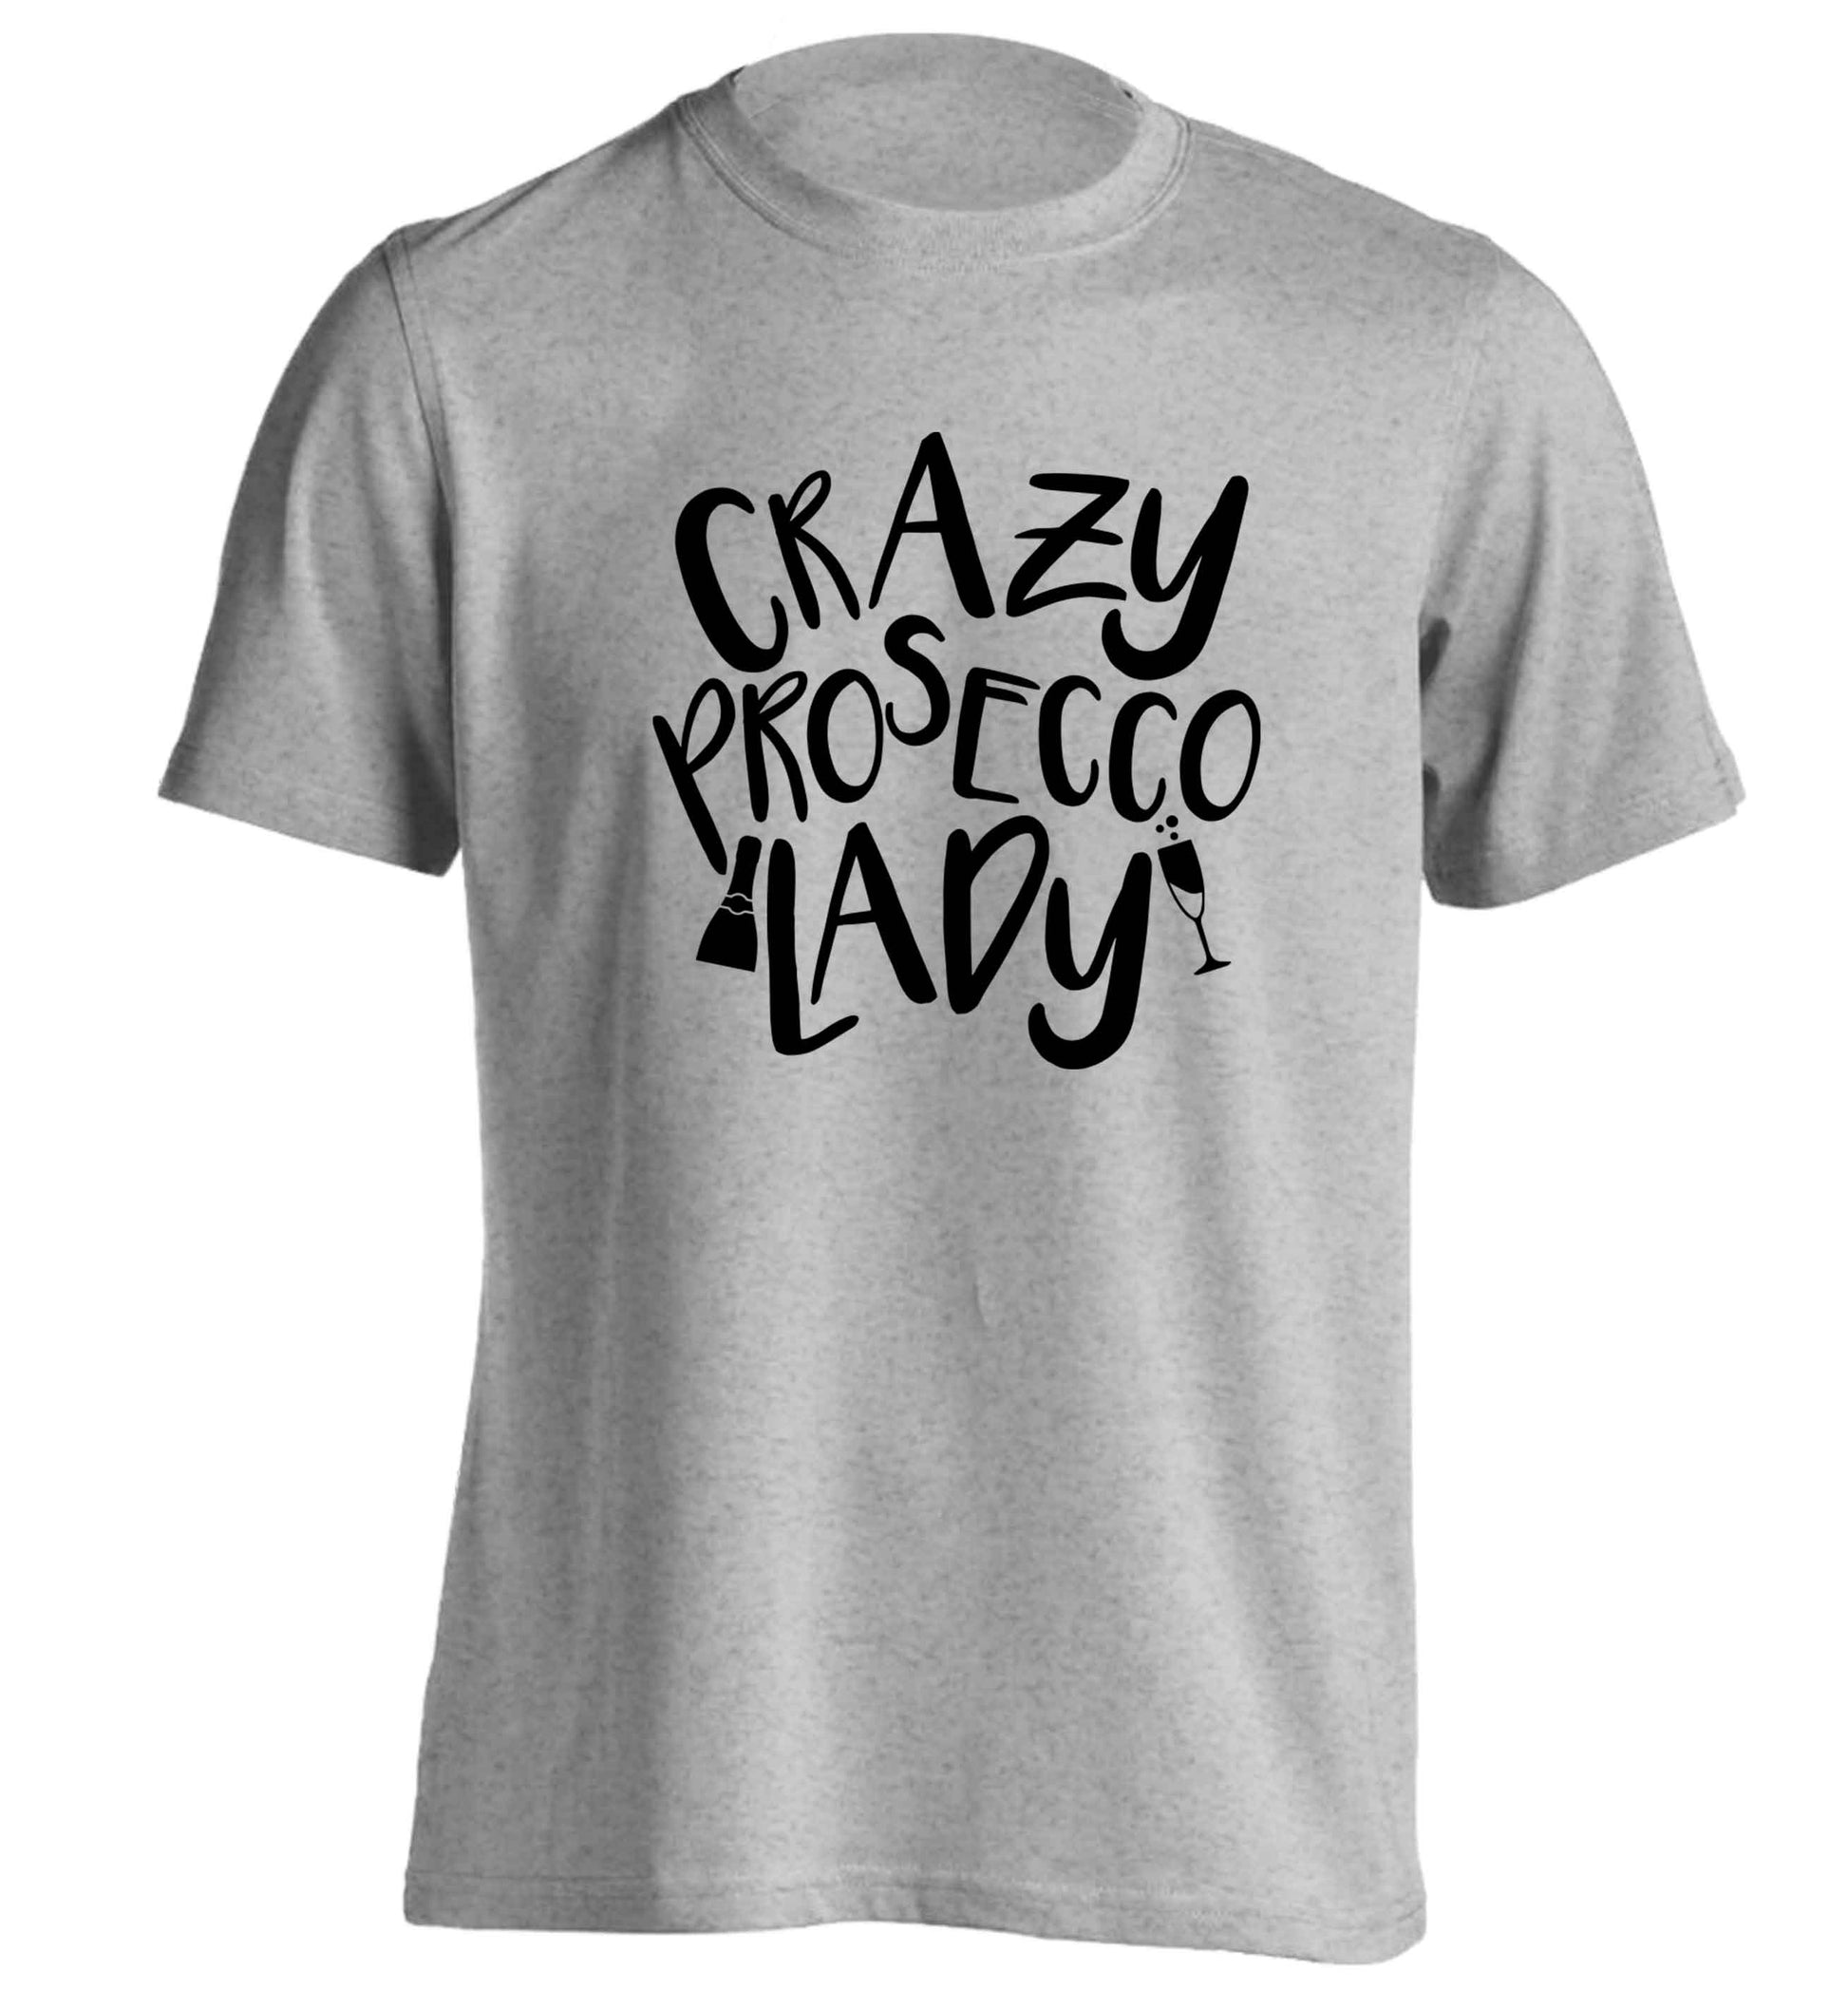 Crazy prosecco lady adults unisex grey Tshirt 2XL